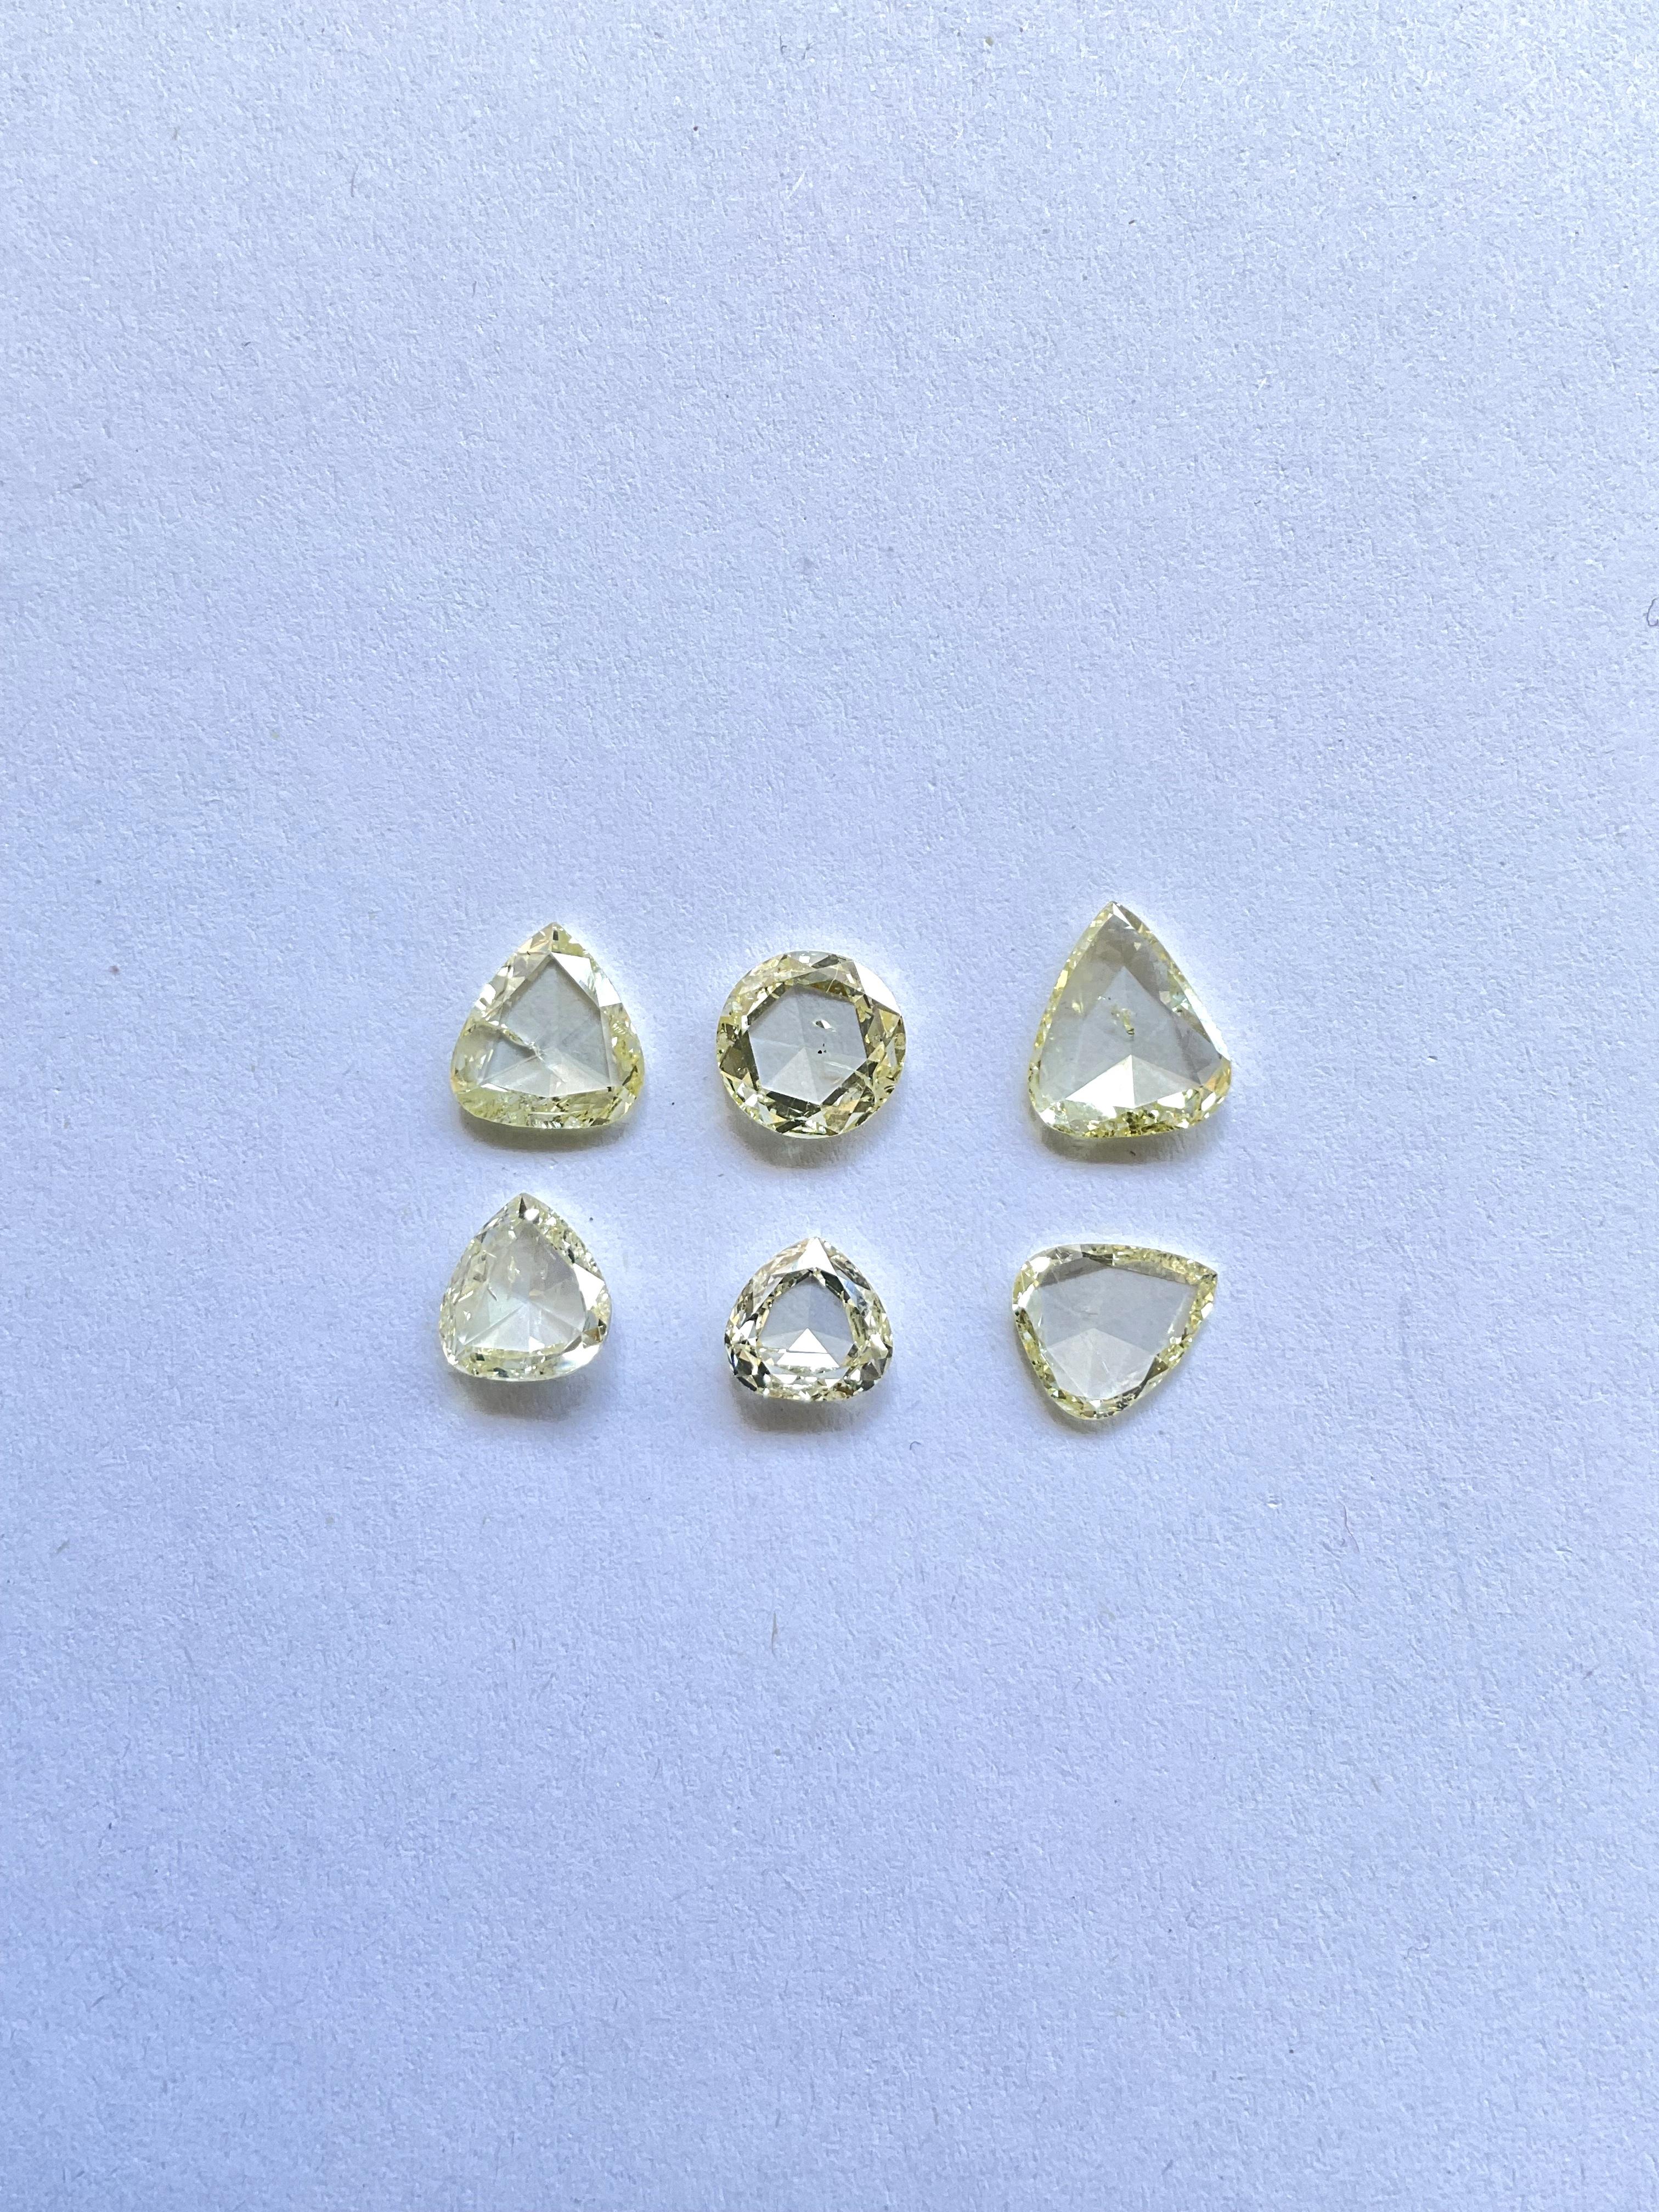 6,08 Karat Nicht-zertifizierter natürlicher Diamant im Rosenschliff U-Z Farbe für Top-Schmuck

Gewicht : 6,08 Karat
Farbe : U-Z
Klarheit : SI
Menge : 6 Stück  
Schliff : Rosenschliff 
Größe: 6.5x7 bis 8x9.5 MM